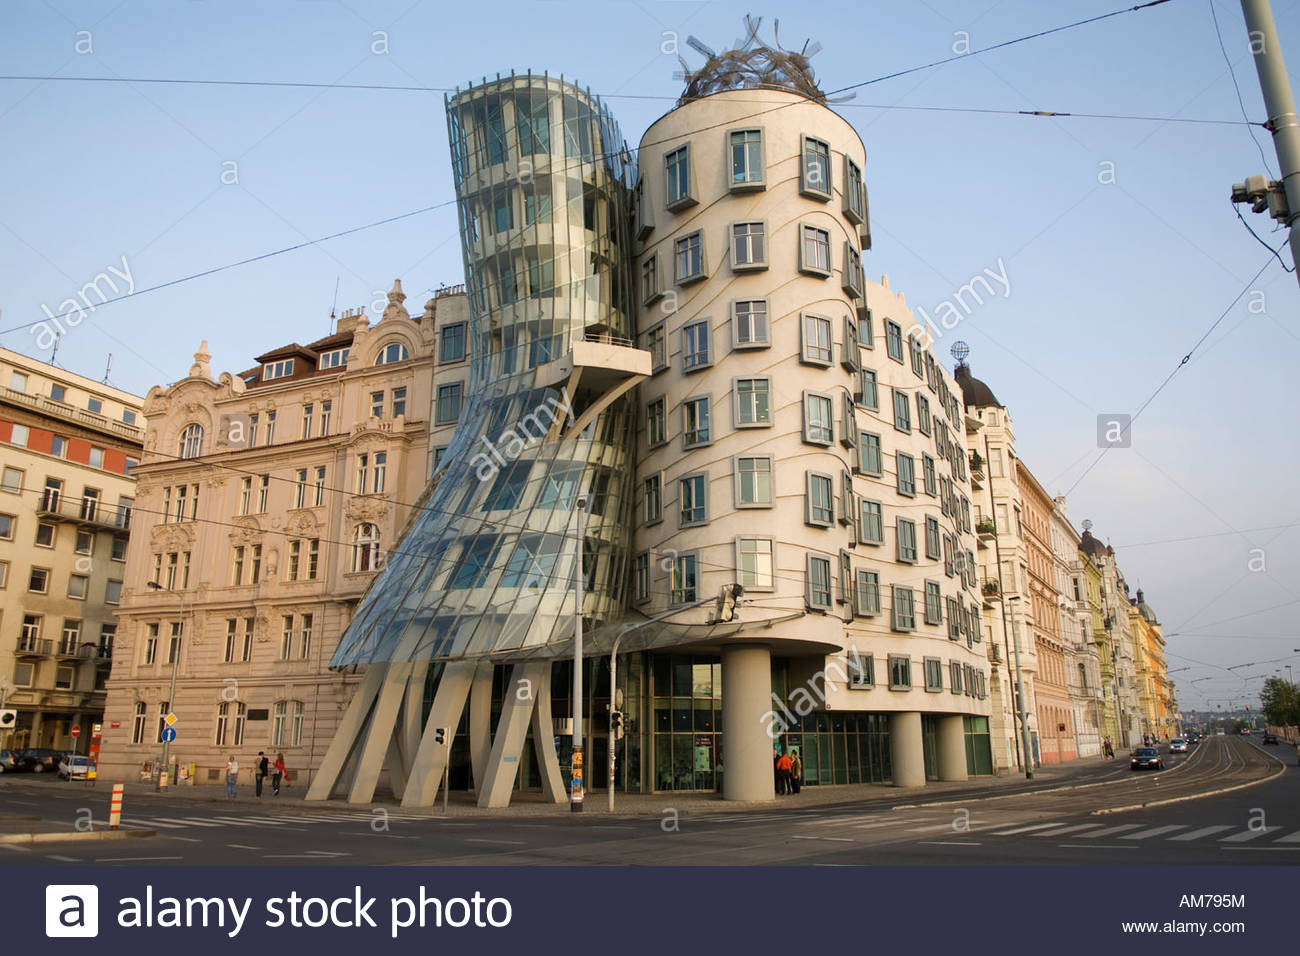 Tanzendes Haus
 Tanzendes Haus "Ginger und Fred" von Frank Gehry Prag